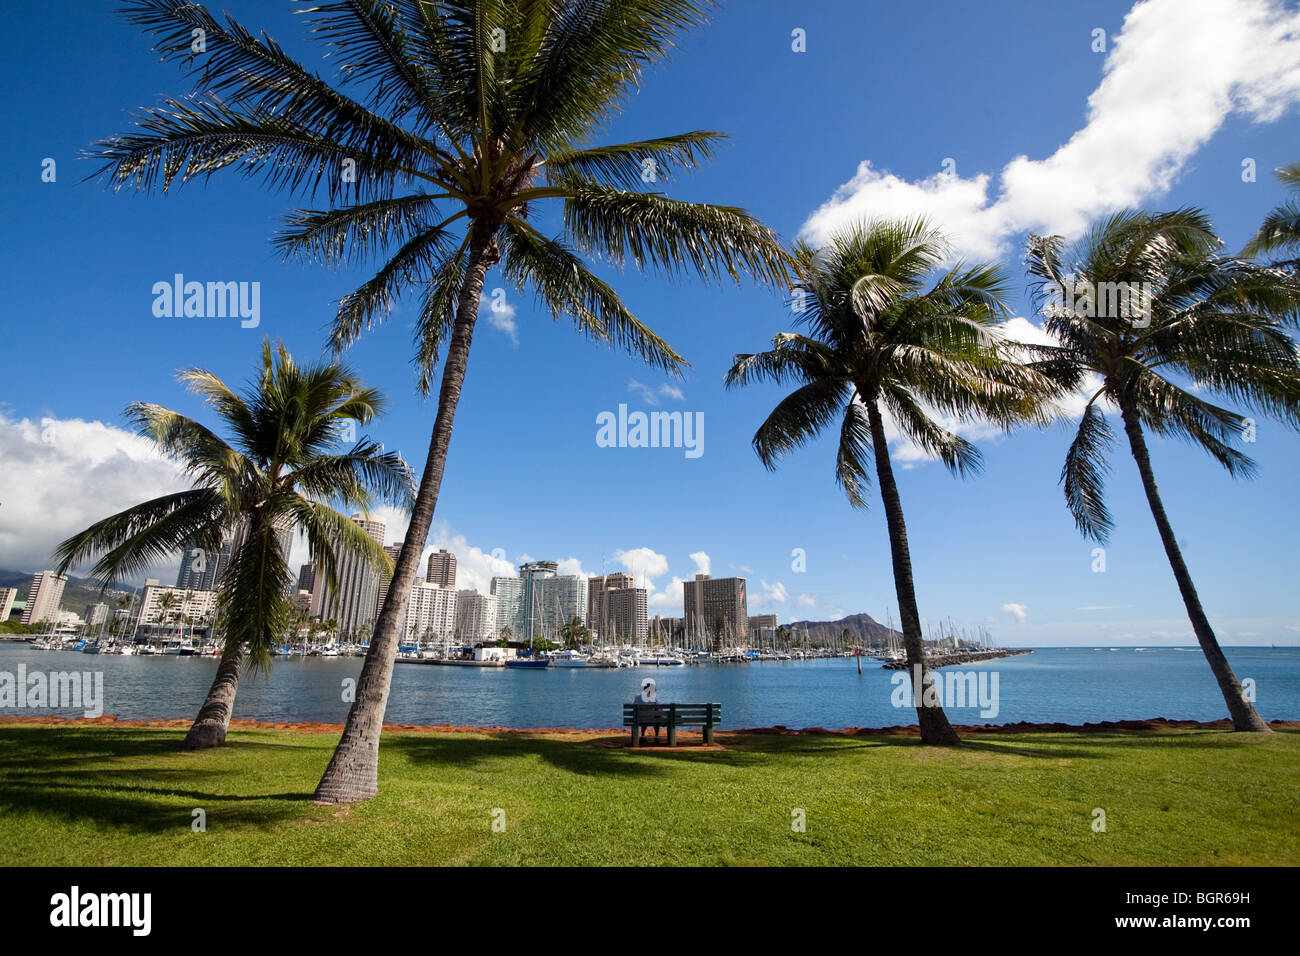 Palmeras y un banco del parque en Ala Moana Park en la isla de Oahu, Hawaii Foto de stock